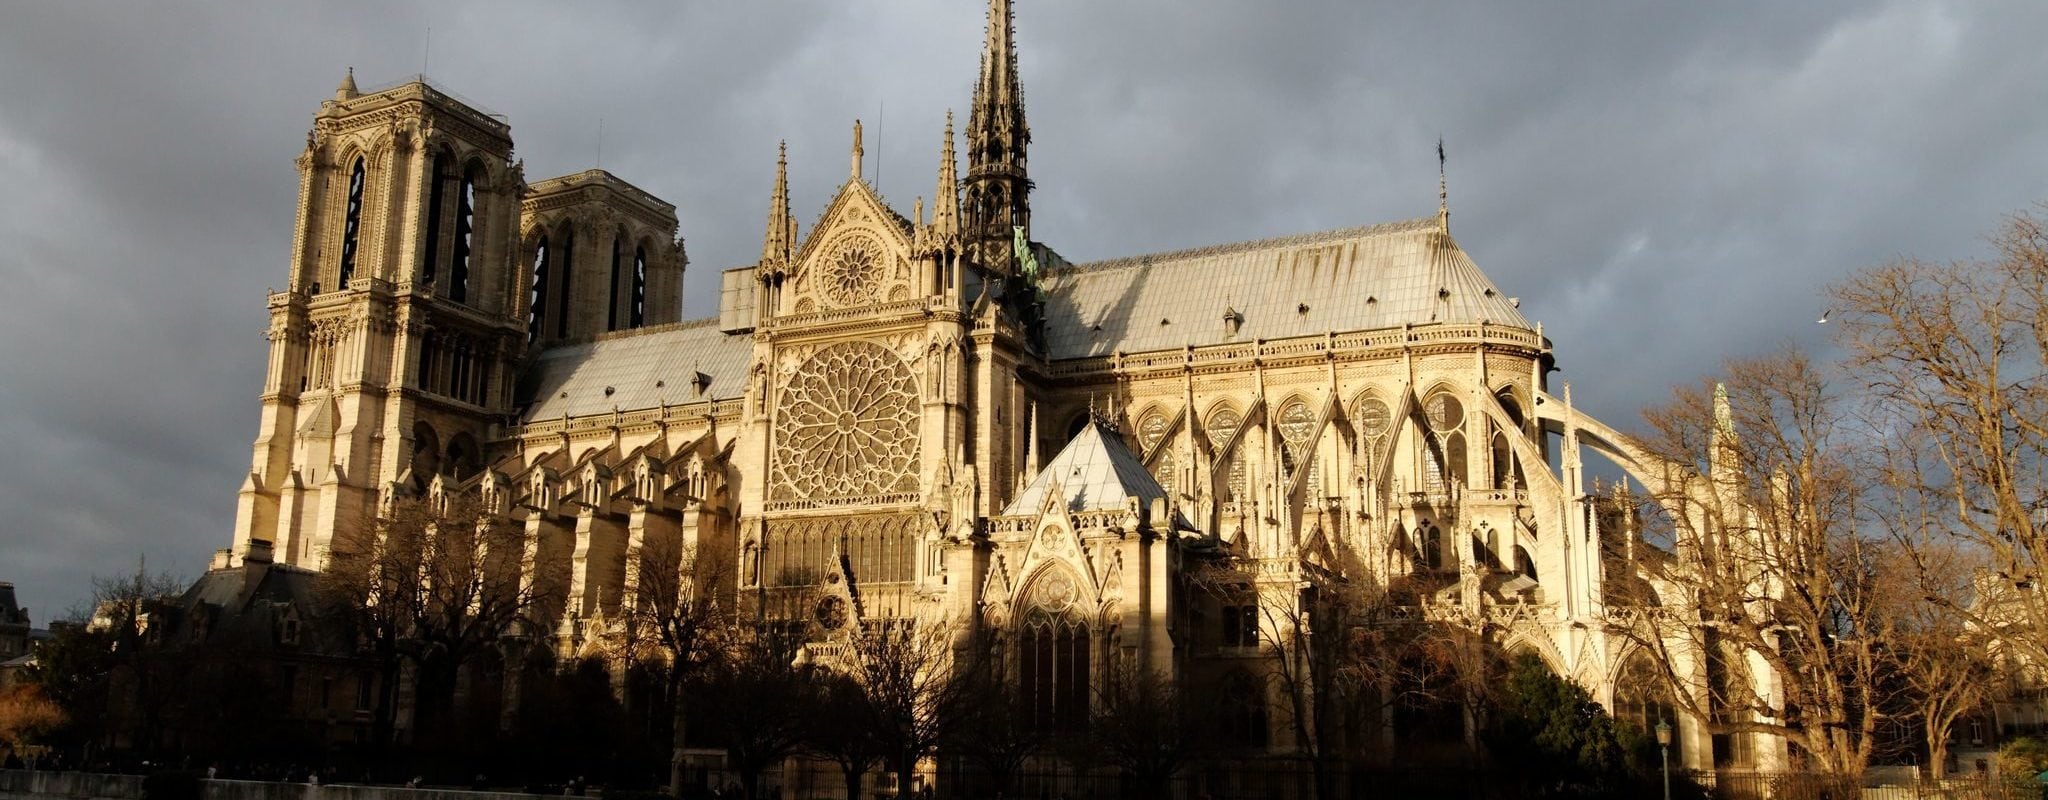 La cathédrale Notre-Dame de Paris en partie détruite par un incendie